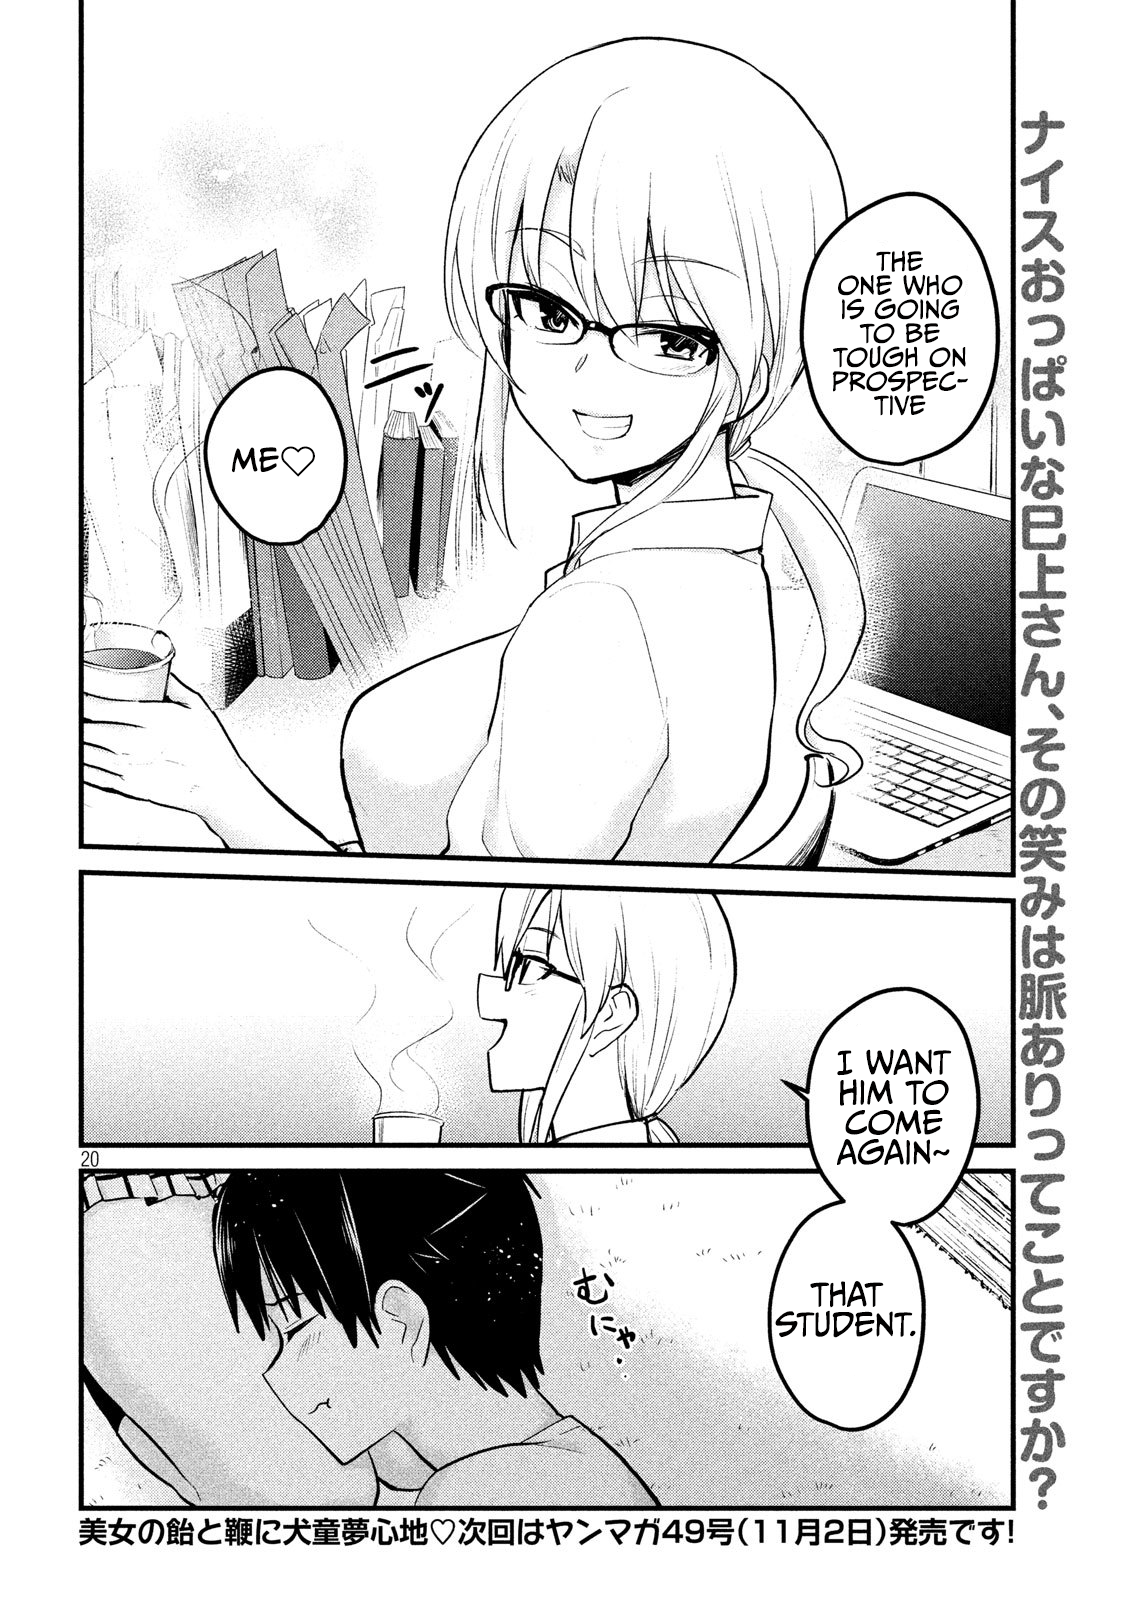 Otaku no Tonari wa ERUFU Desuka? - Chapter 8 Page 20